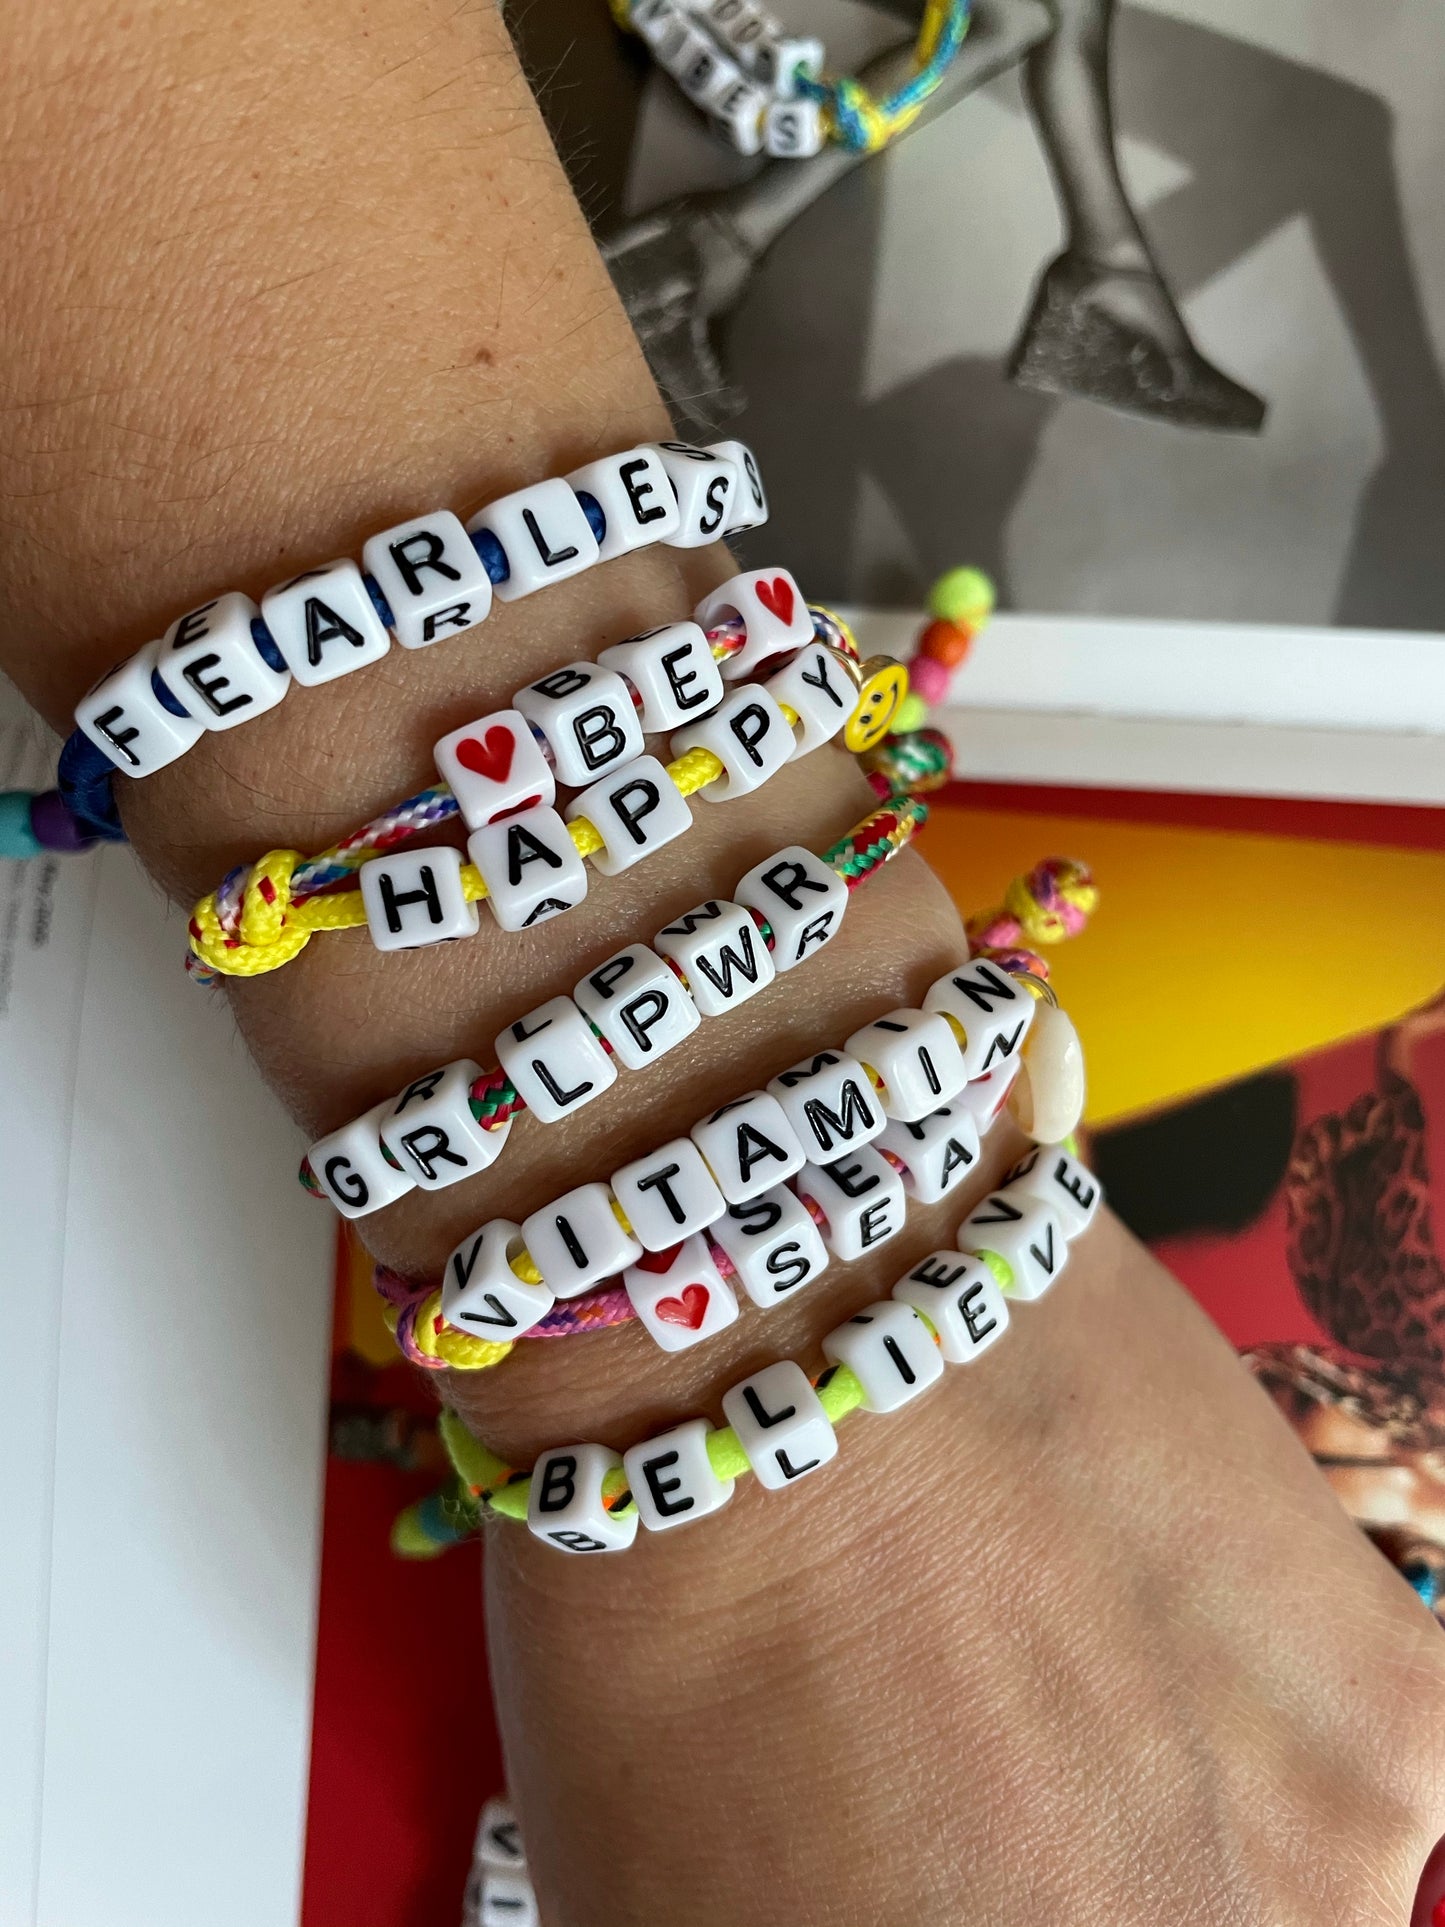 Colorful message adjustable bracelets